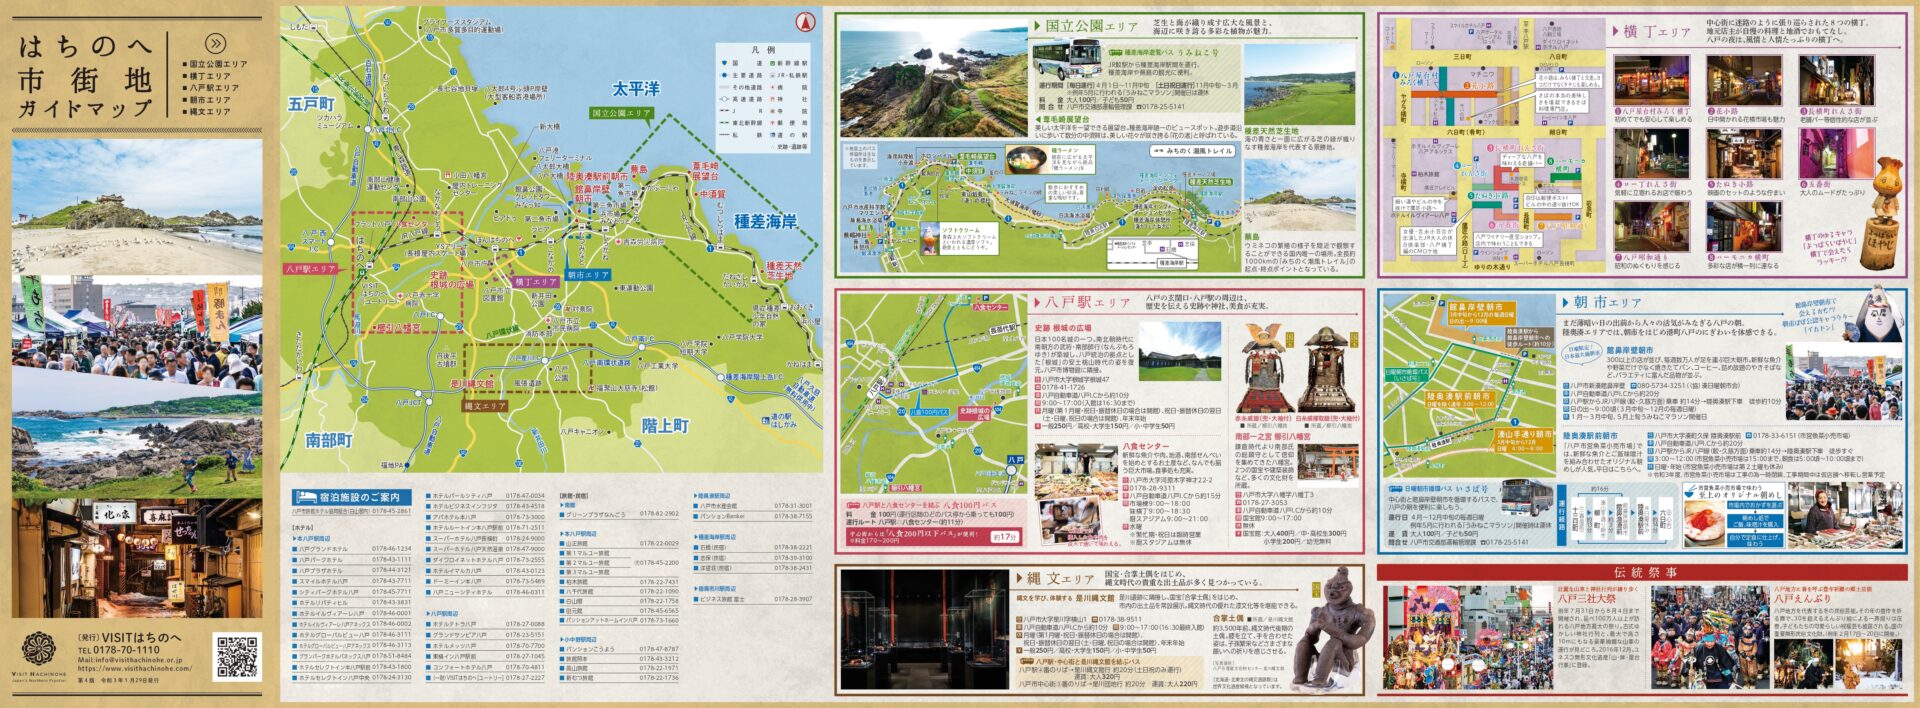 観光パンフレット Br ダウンロード Visit Hachinohe Visitはちのへ観光物産サイト